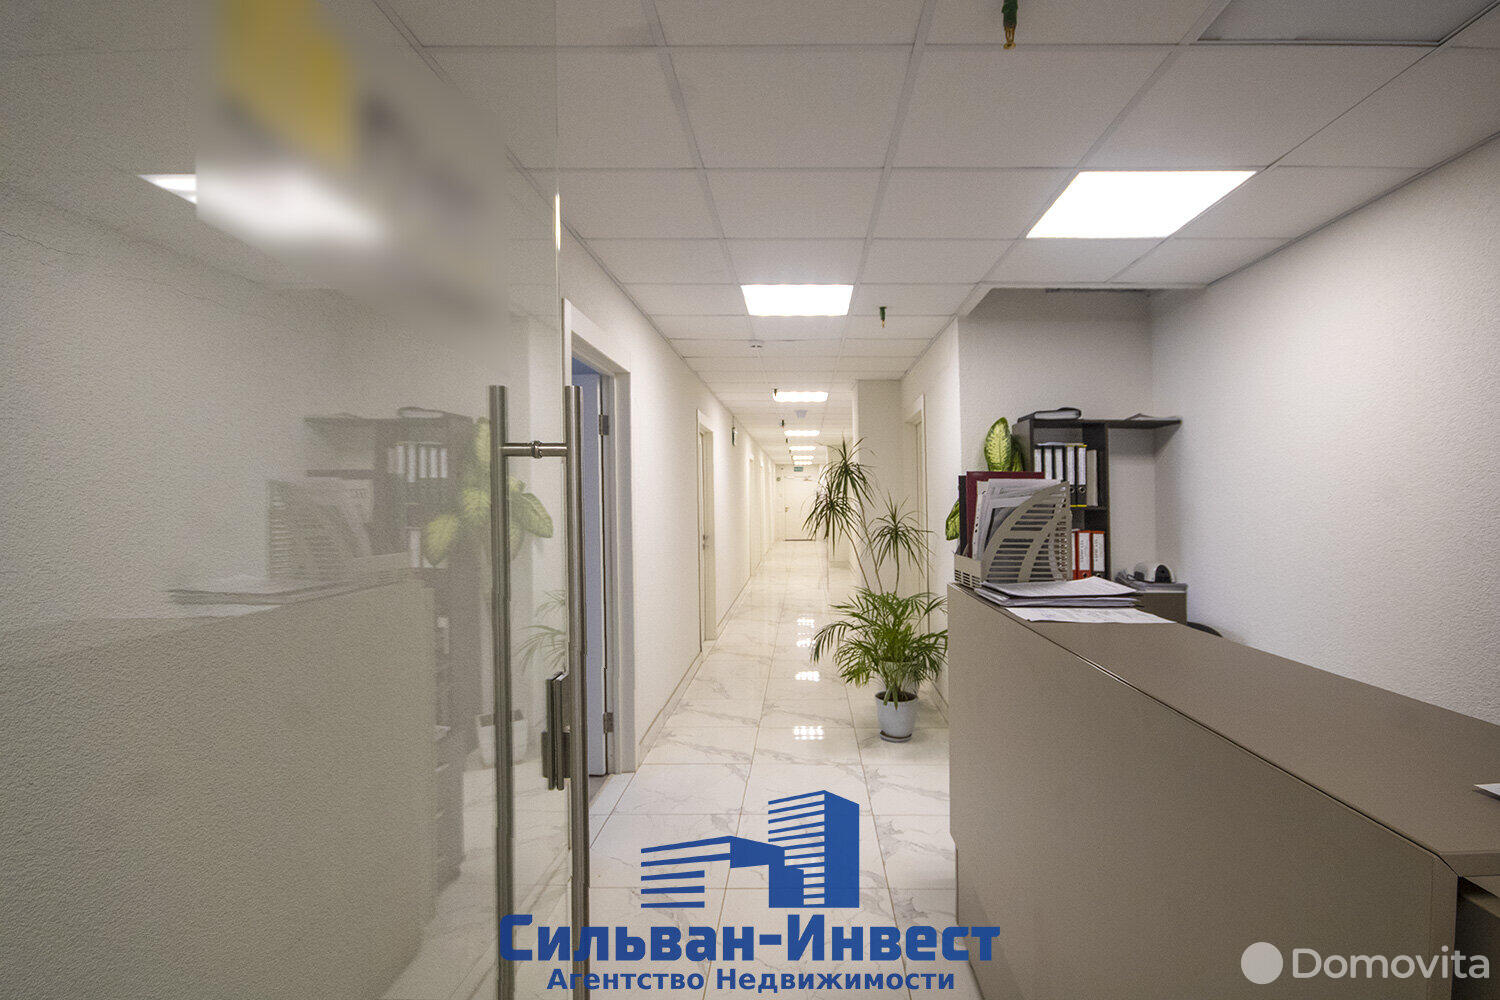 Снять офис на ул. Рудобельская, д. 3 в Минске, 1527EUR - фото 3